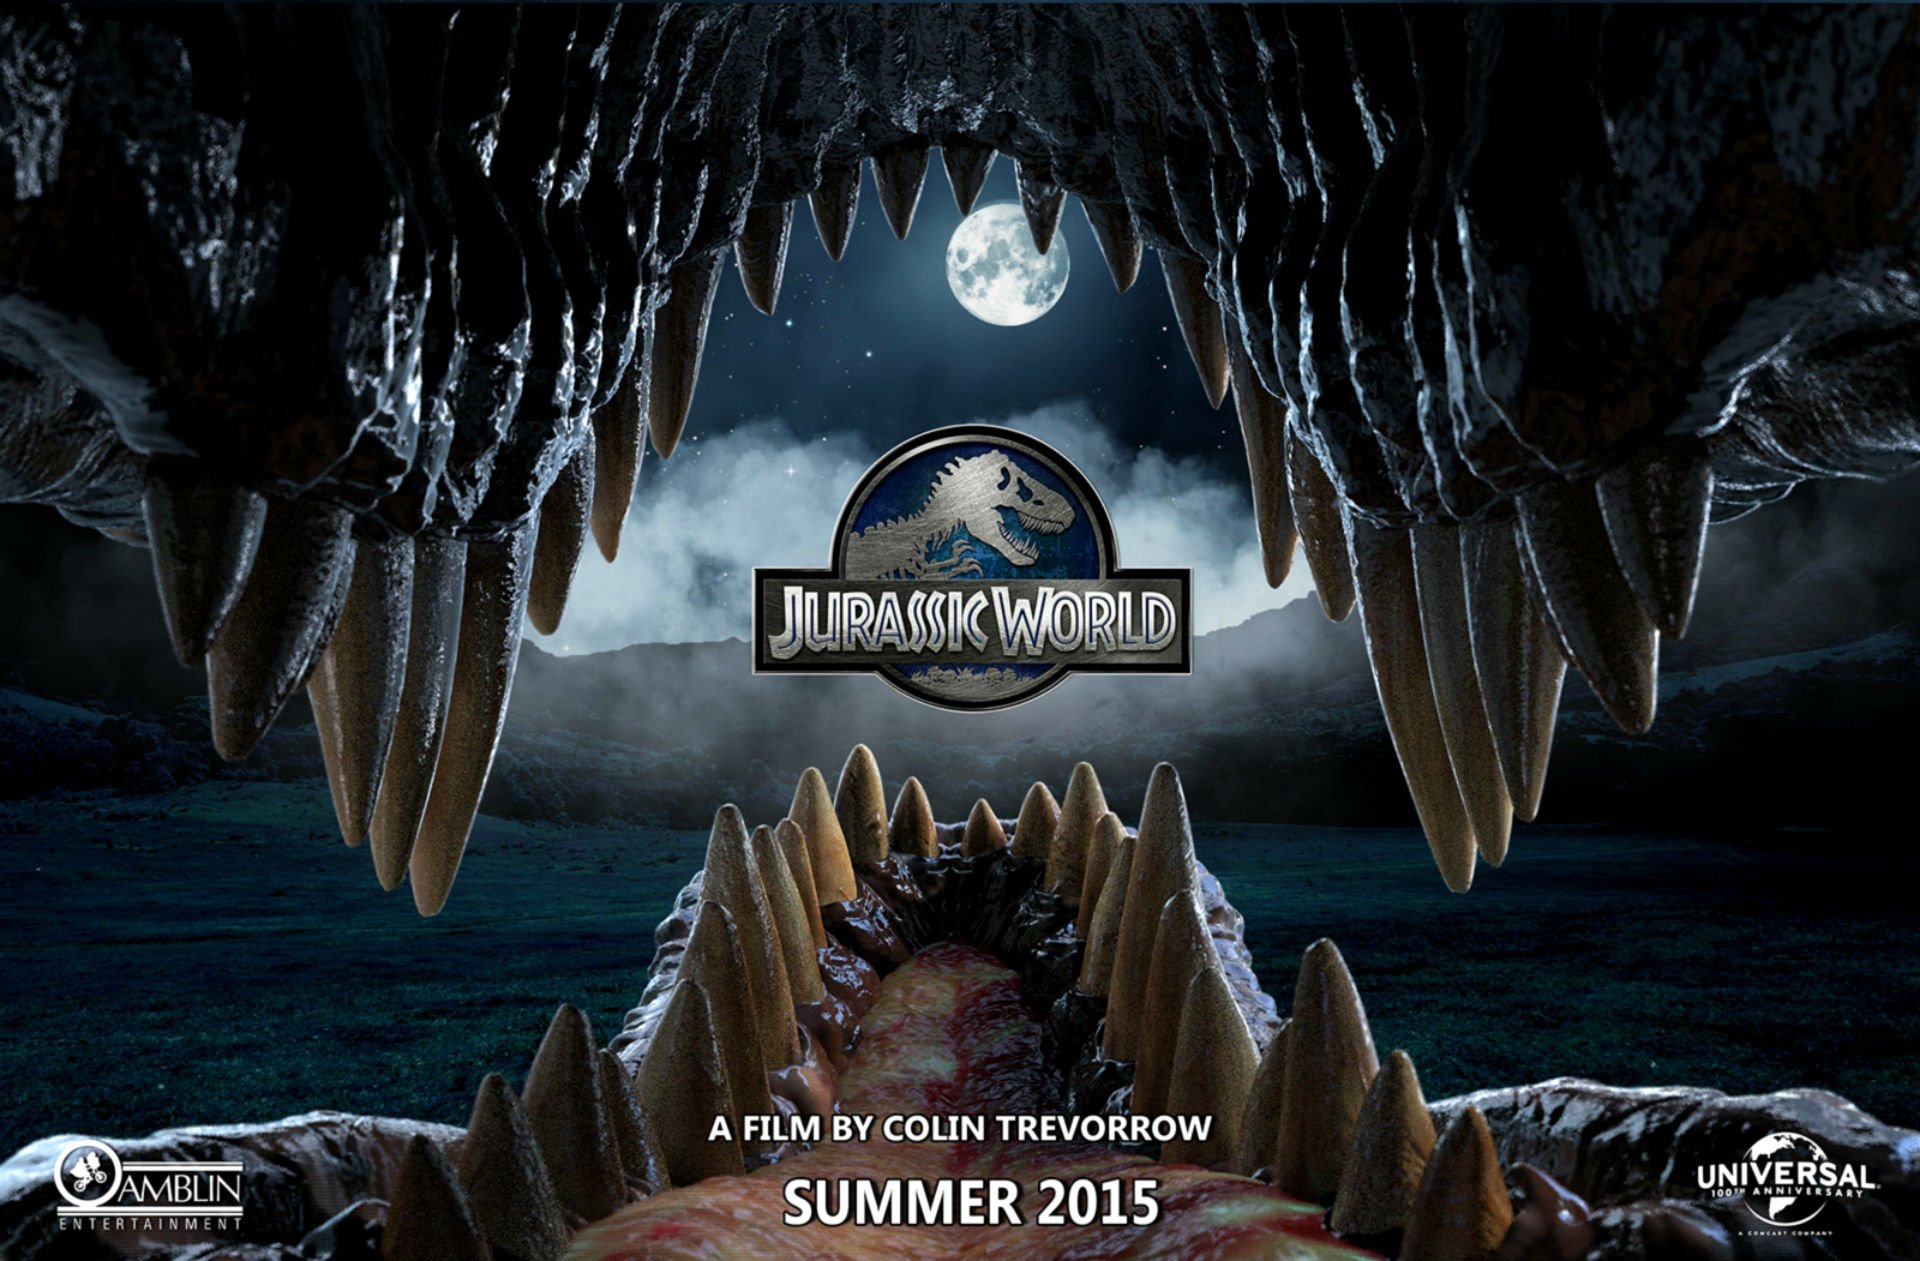 jurassic, World, Adventure, Sci fi, Dinosaur, Fantasy, Film, 2015, Park,  9 Wallpaper